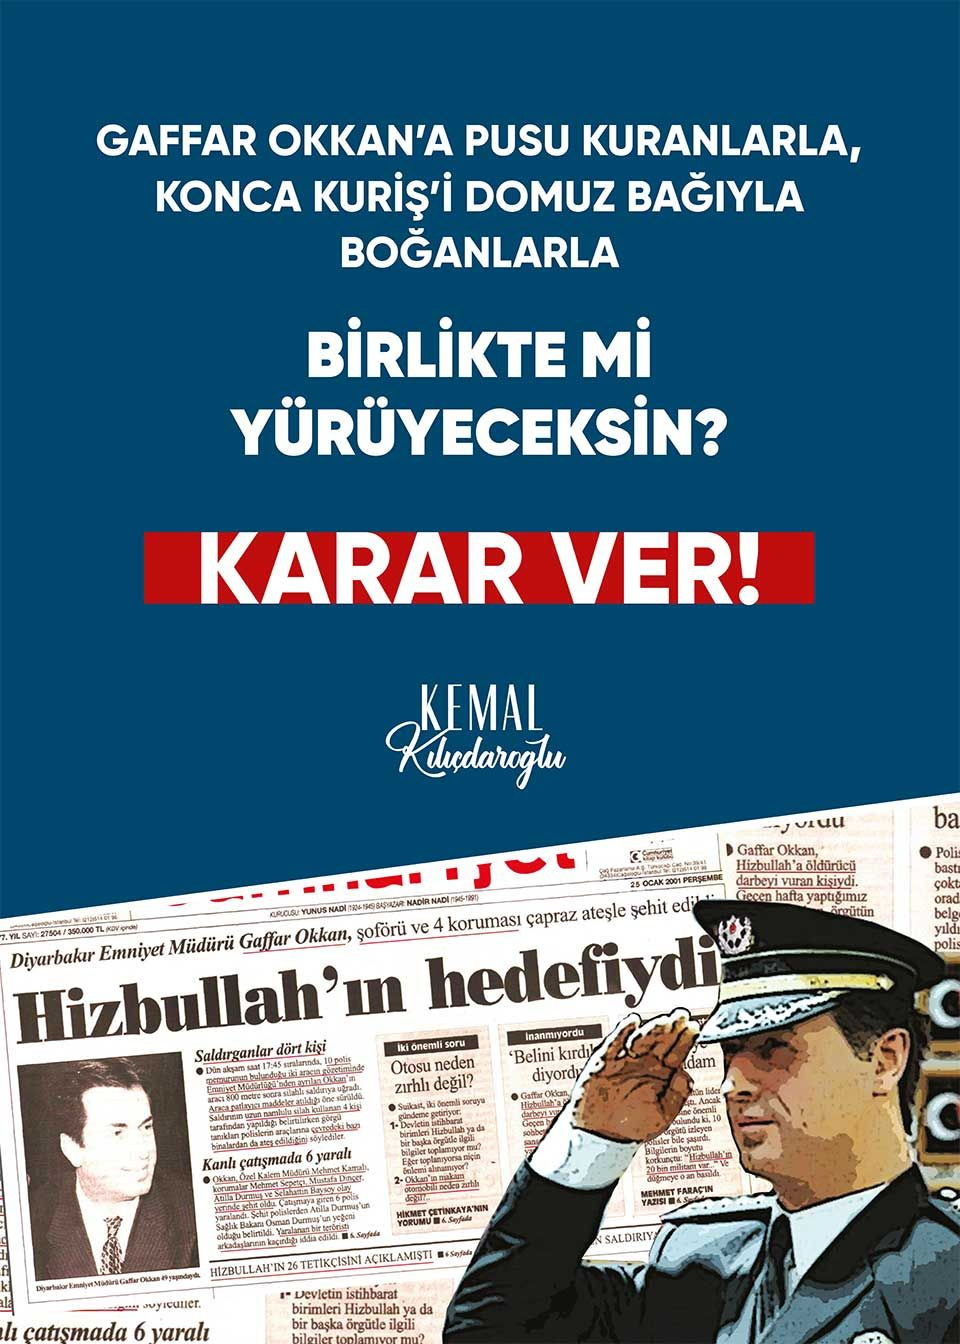 Kılıçdaroğlu'nun seçim sloganı 'Karar ver': 9 başlıkta afiş hazırlandı - Sayfa 2